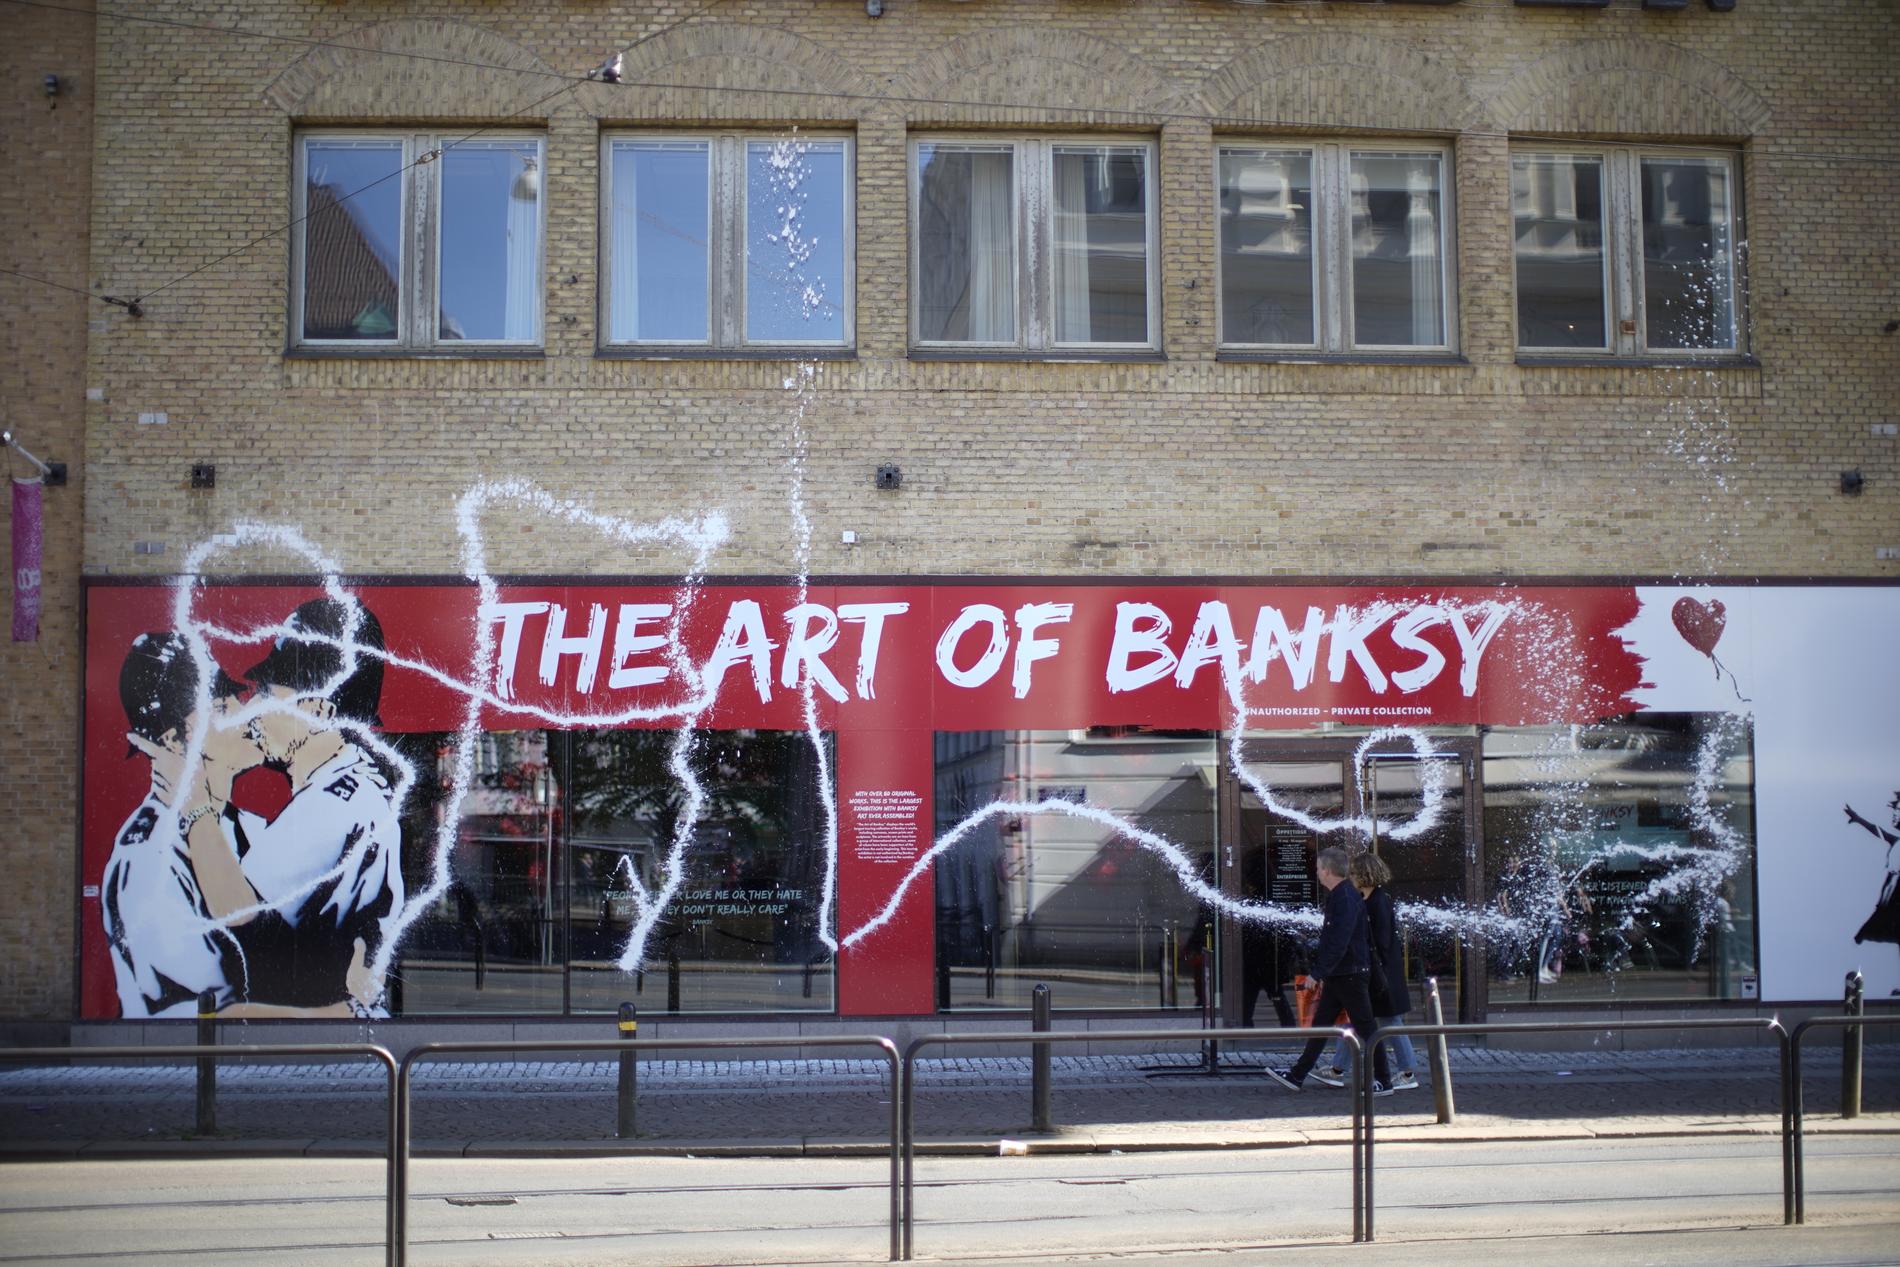 I dag öppnade Banksyutställningen i Göteborg. När personalen kom dit i morse var fasaden vandaliserad.